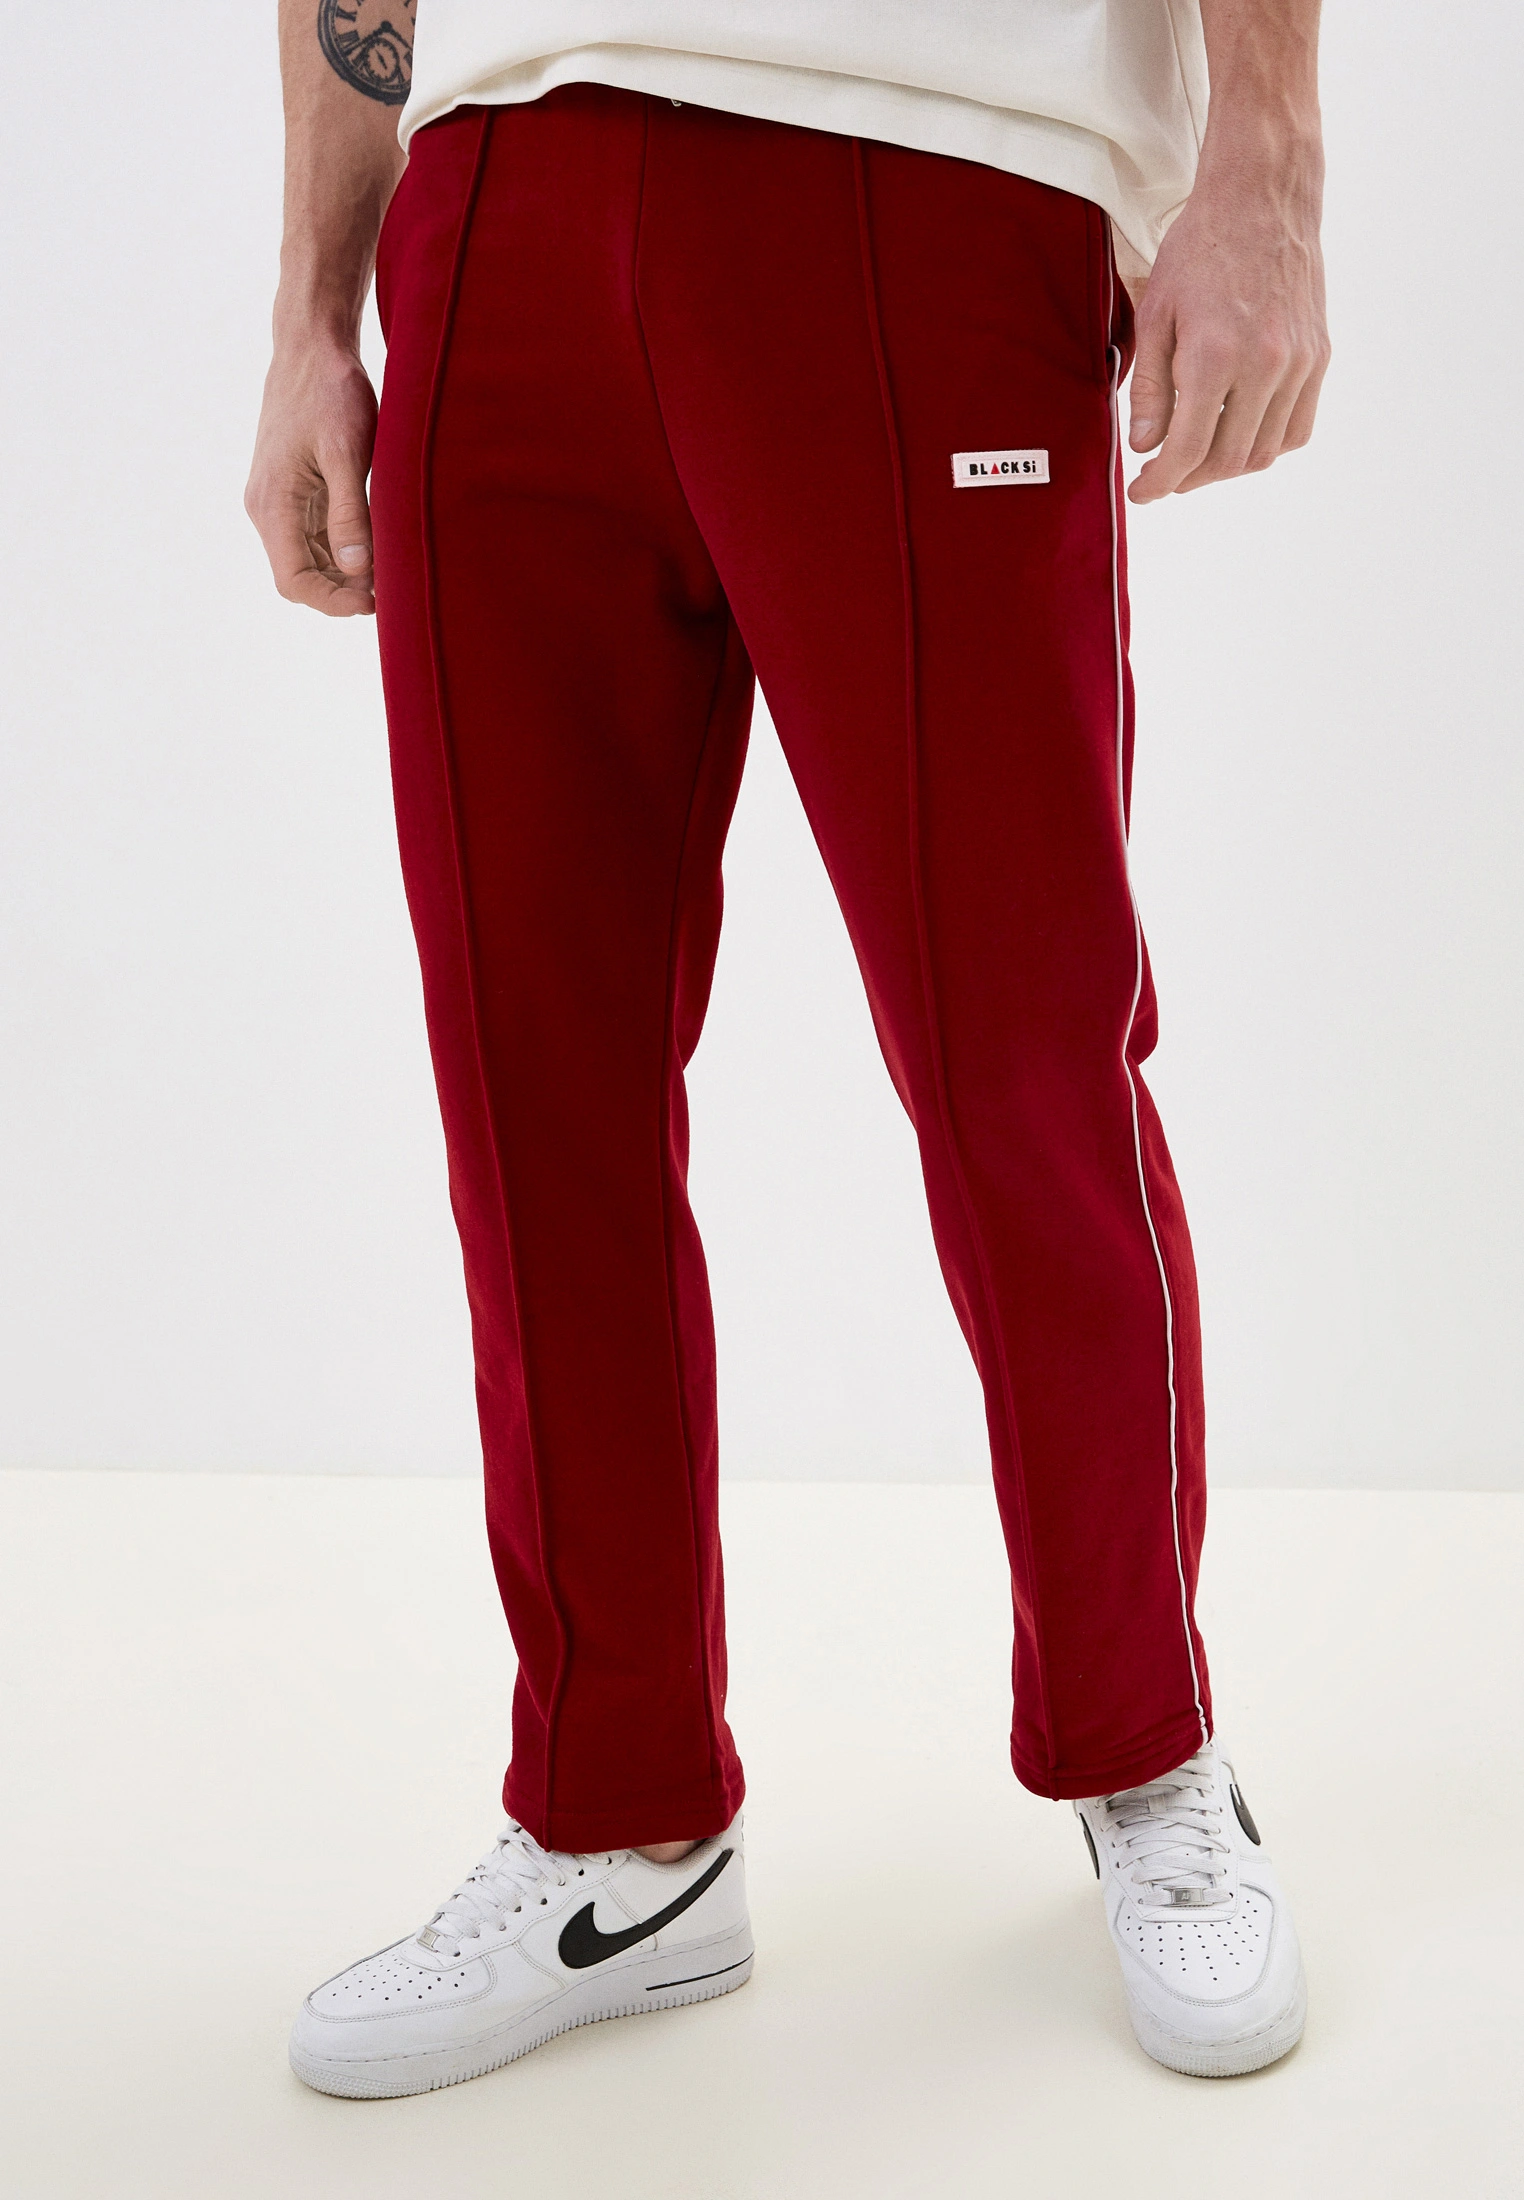 Спортивные брюки мужские BLACKSI 5408 бордовые XL